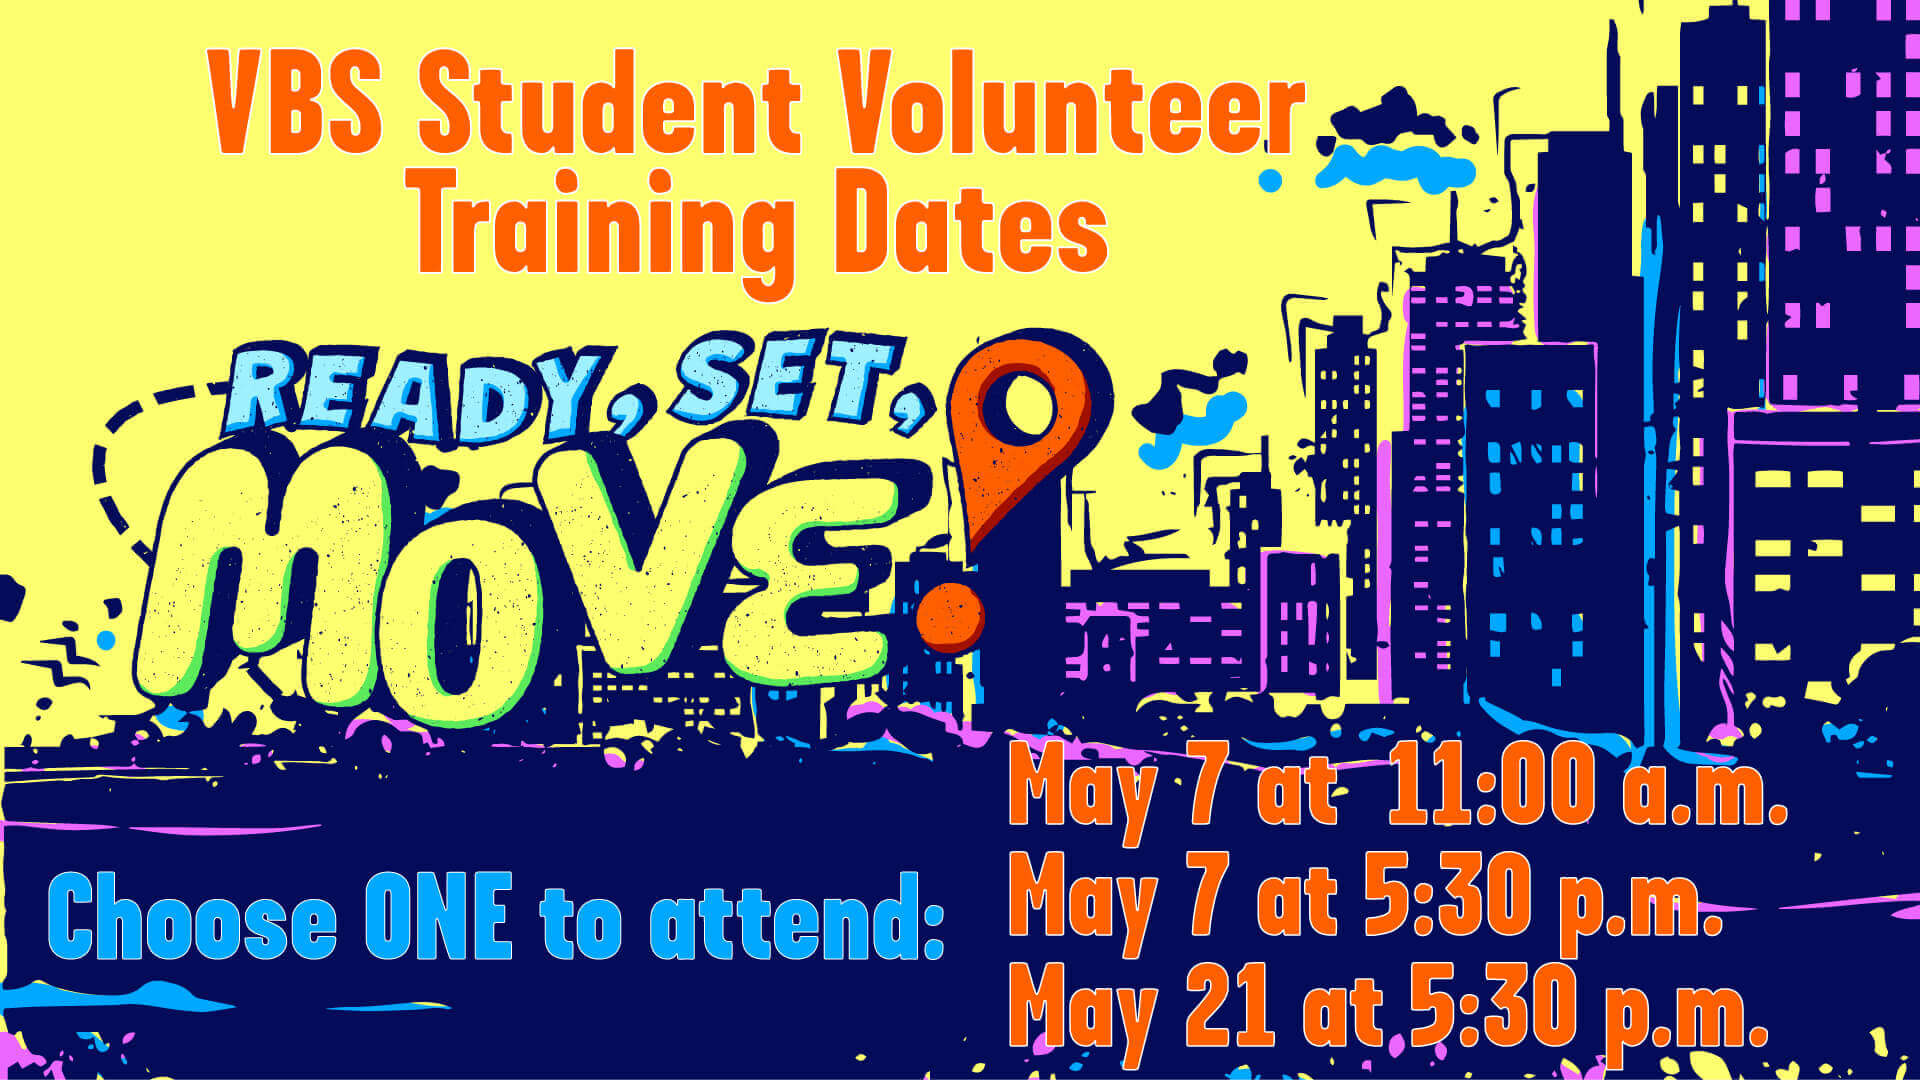 Student Volunteer Training Dates